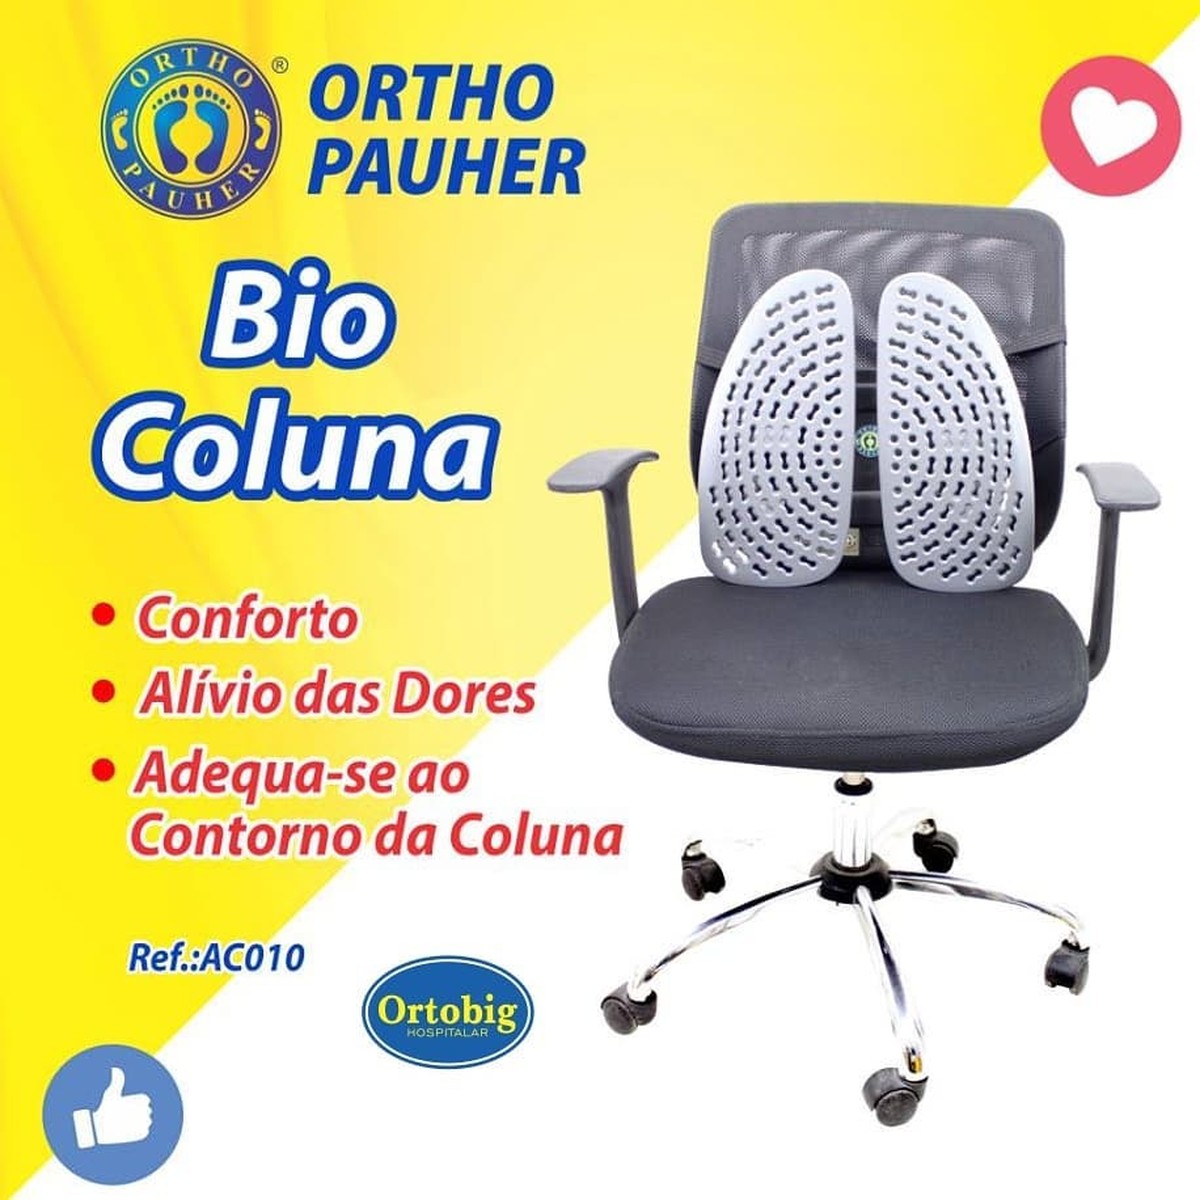 Foto do produto Bio Coluna - Encosto Ortopédico Dinamica e Flexivel AC-010 OrthoPauher